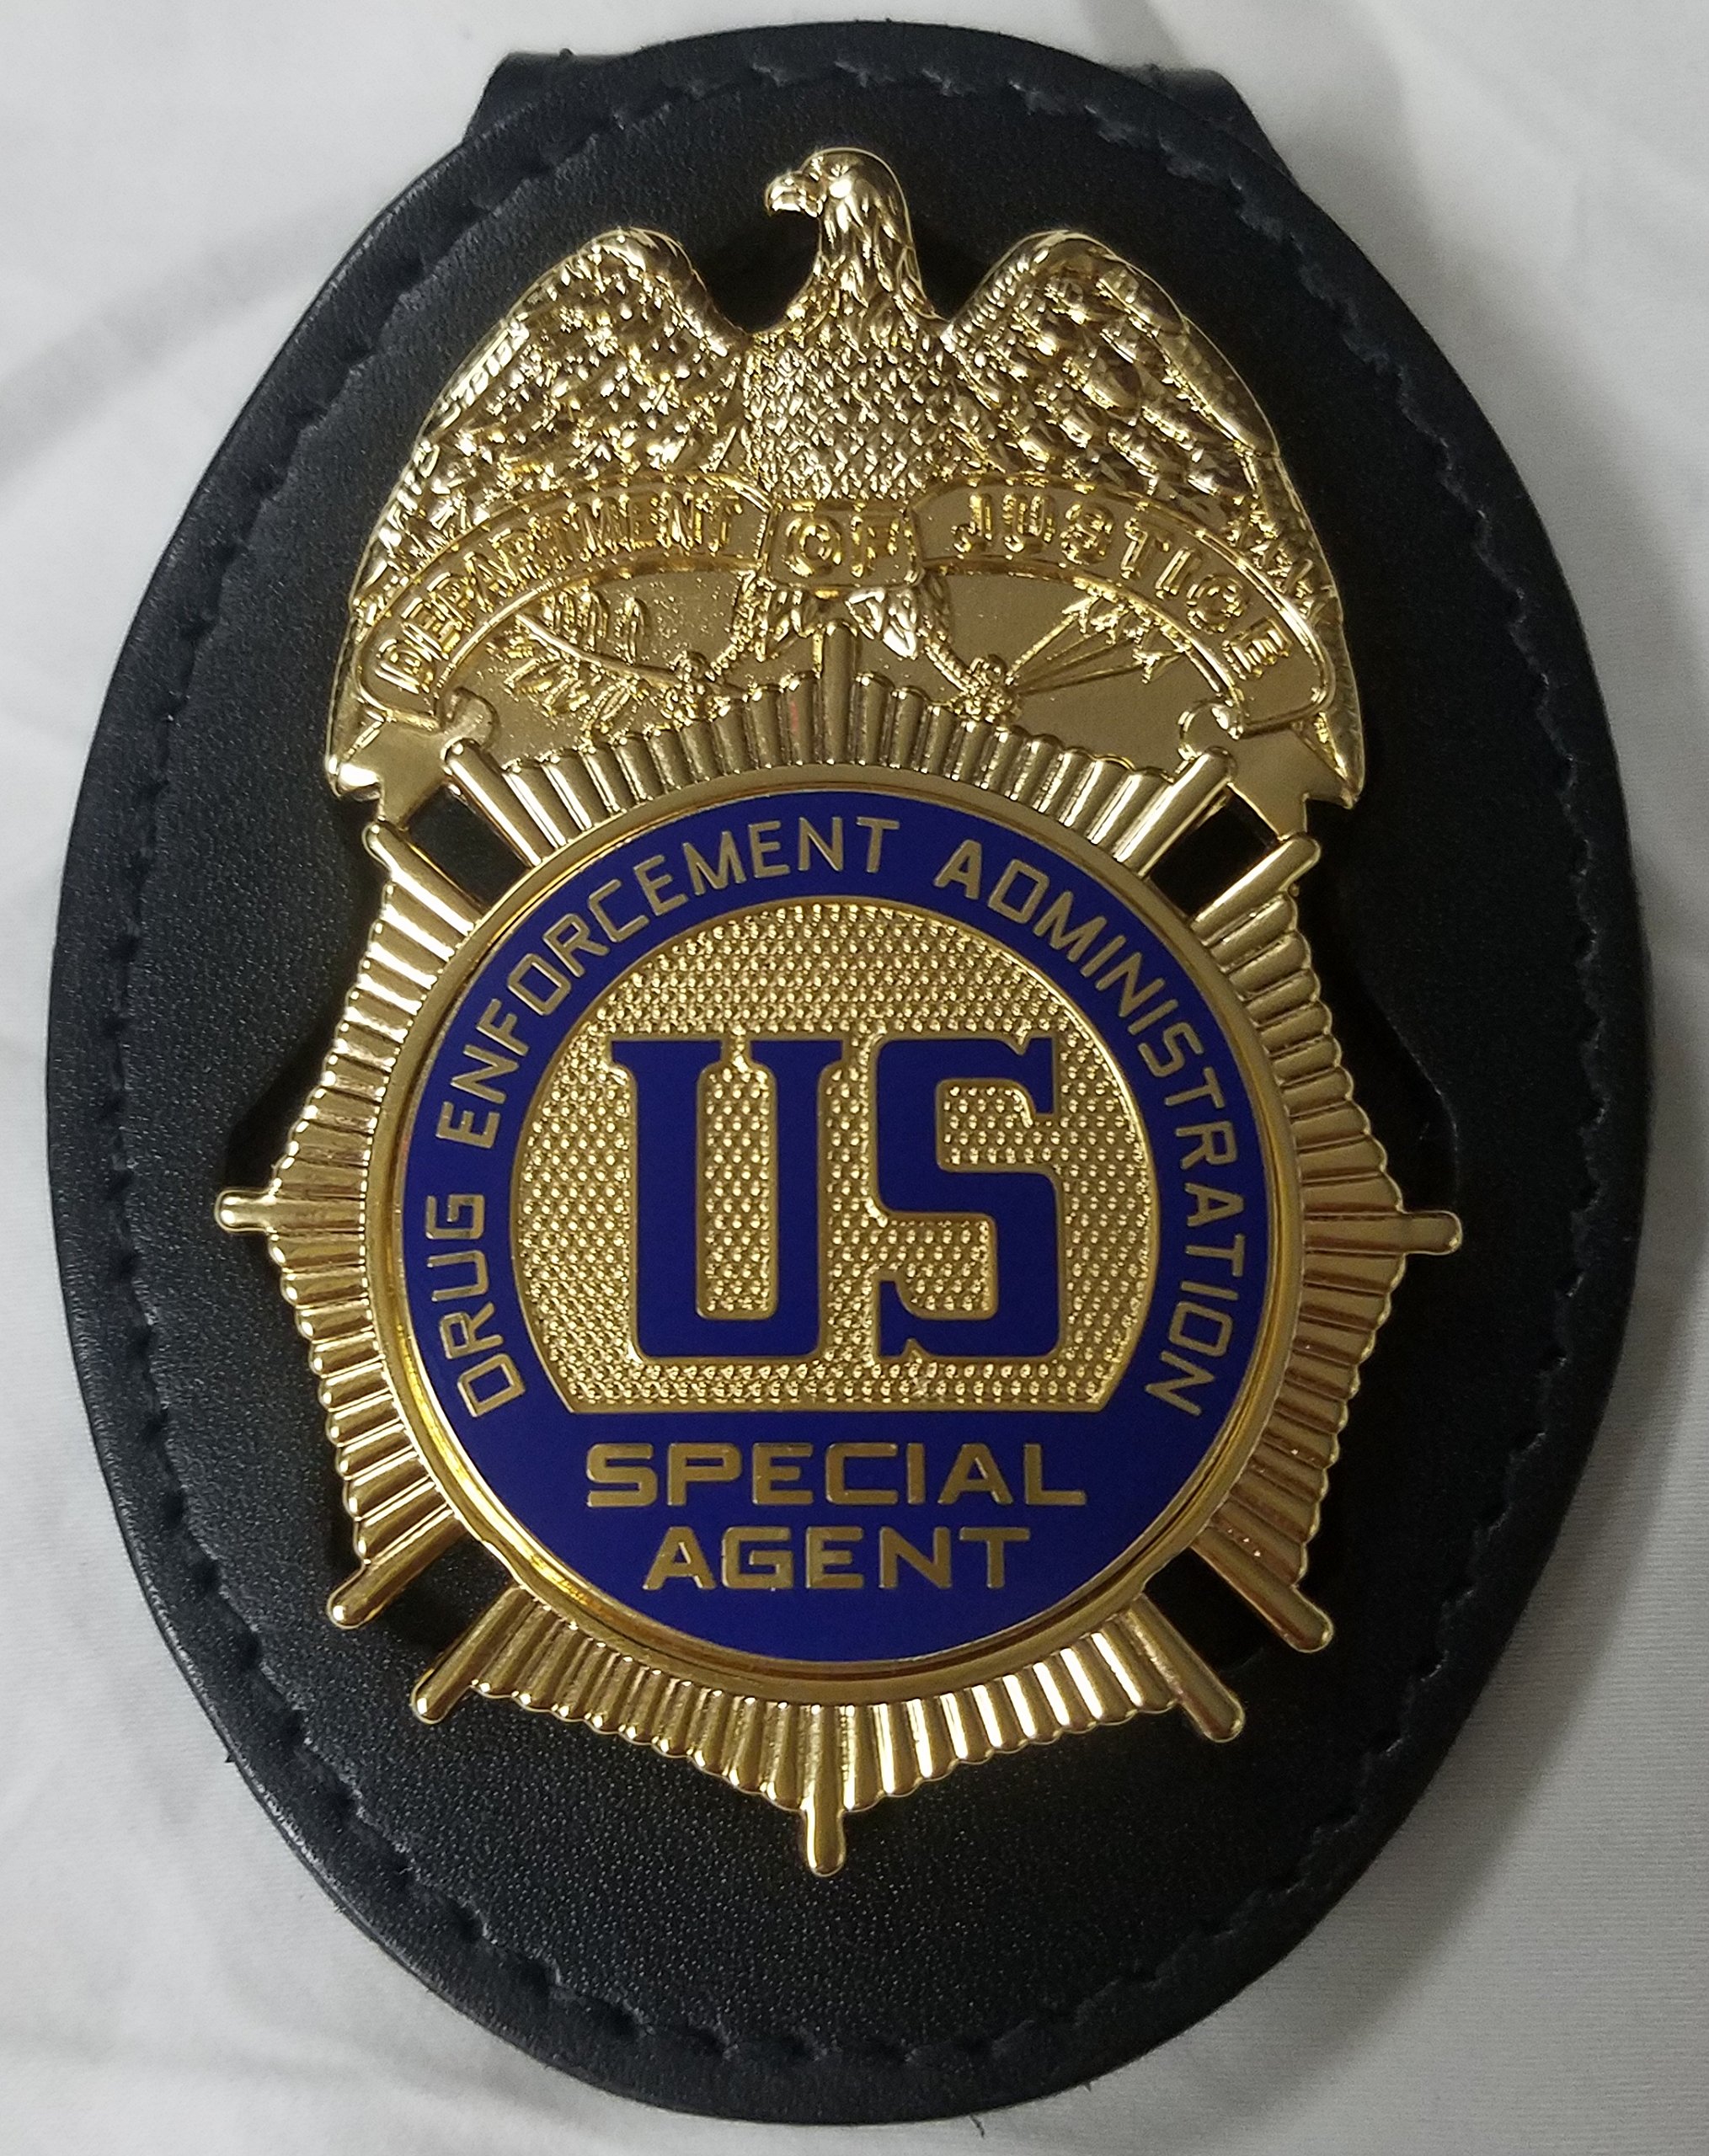 Registered agent badge or symbol.